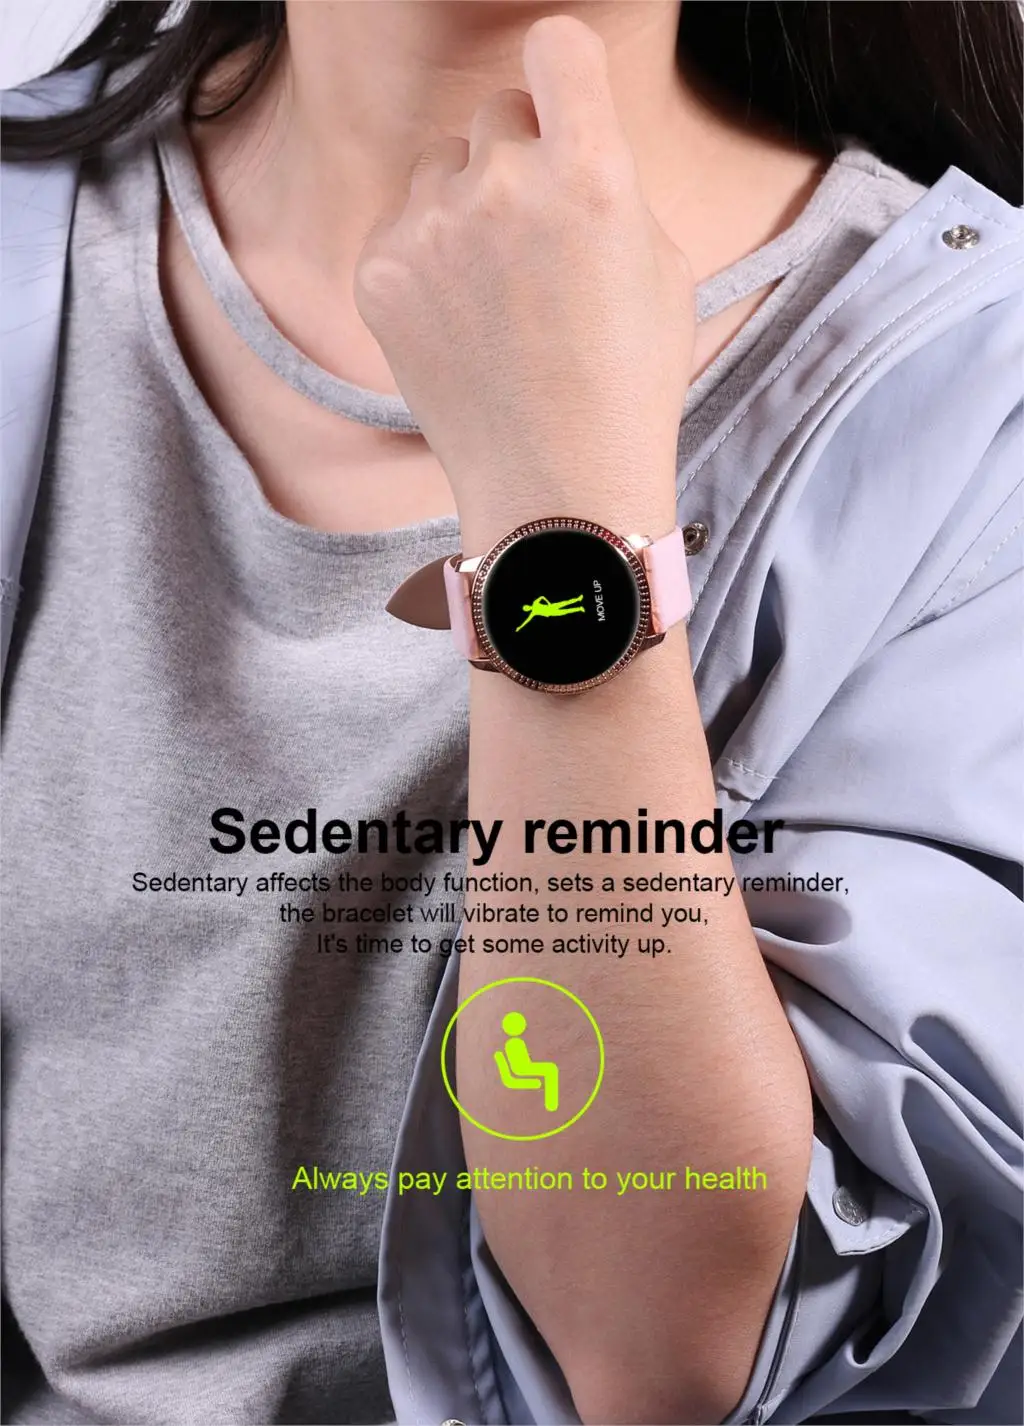 Смарт-часы SENBONO CF18, OLED, цветной экран, умные часы для мужчин и женщин, модный фитнес-трекер, смарт-браслет